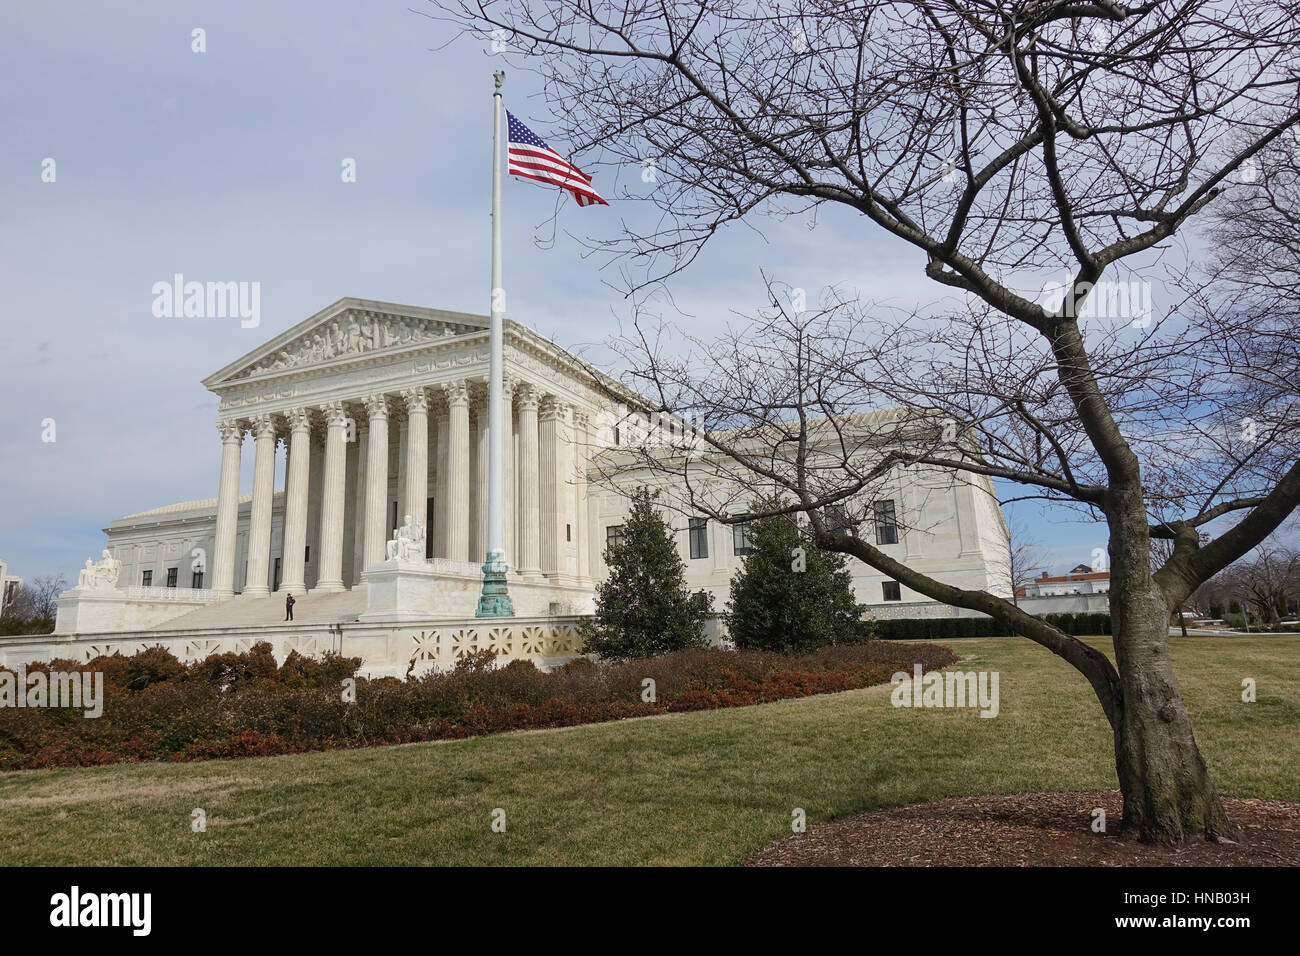 Edificio de la Corte Suprema de EE.UU invernal, gran angular, la bandera americana Foto de stock